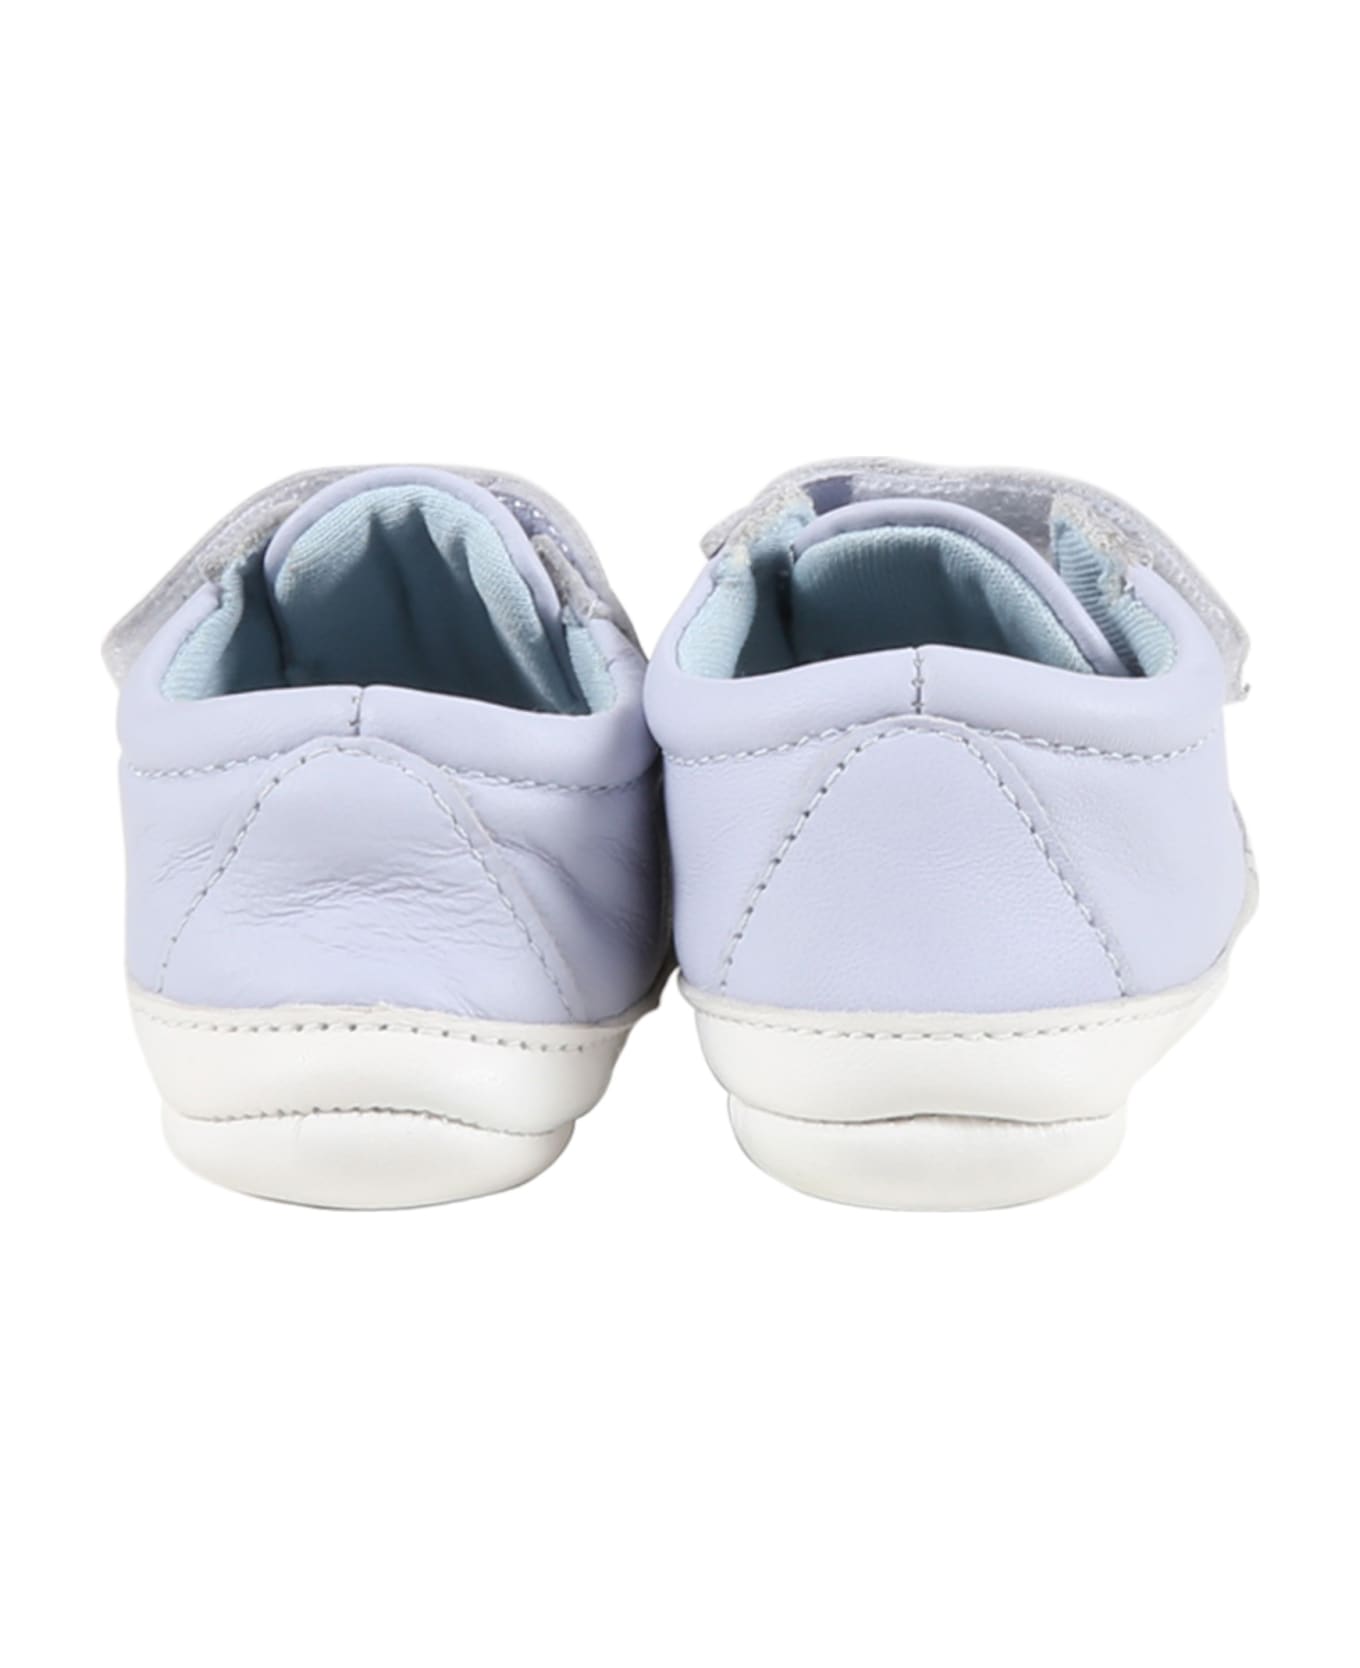 Hugo Boss Light-blue Sneakers For Baby Boy With Logo - Light Blue シューズ